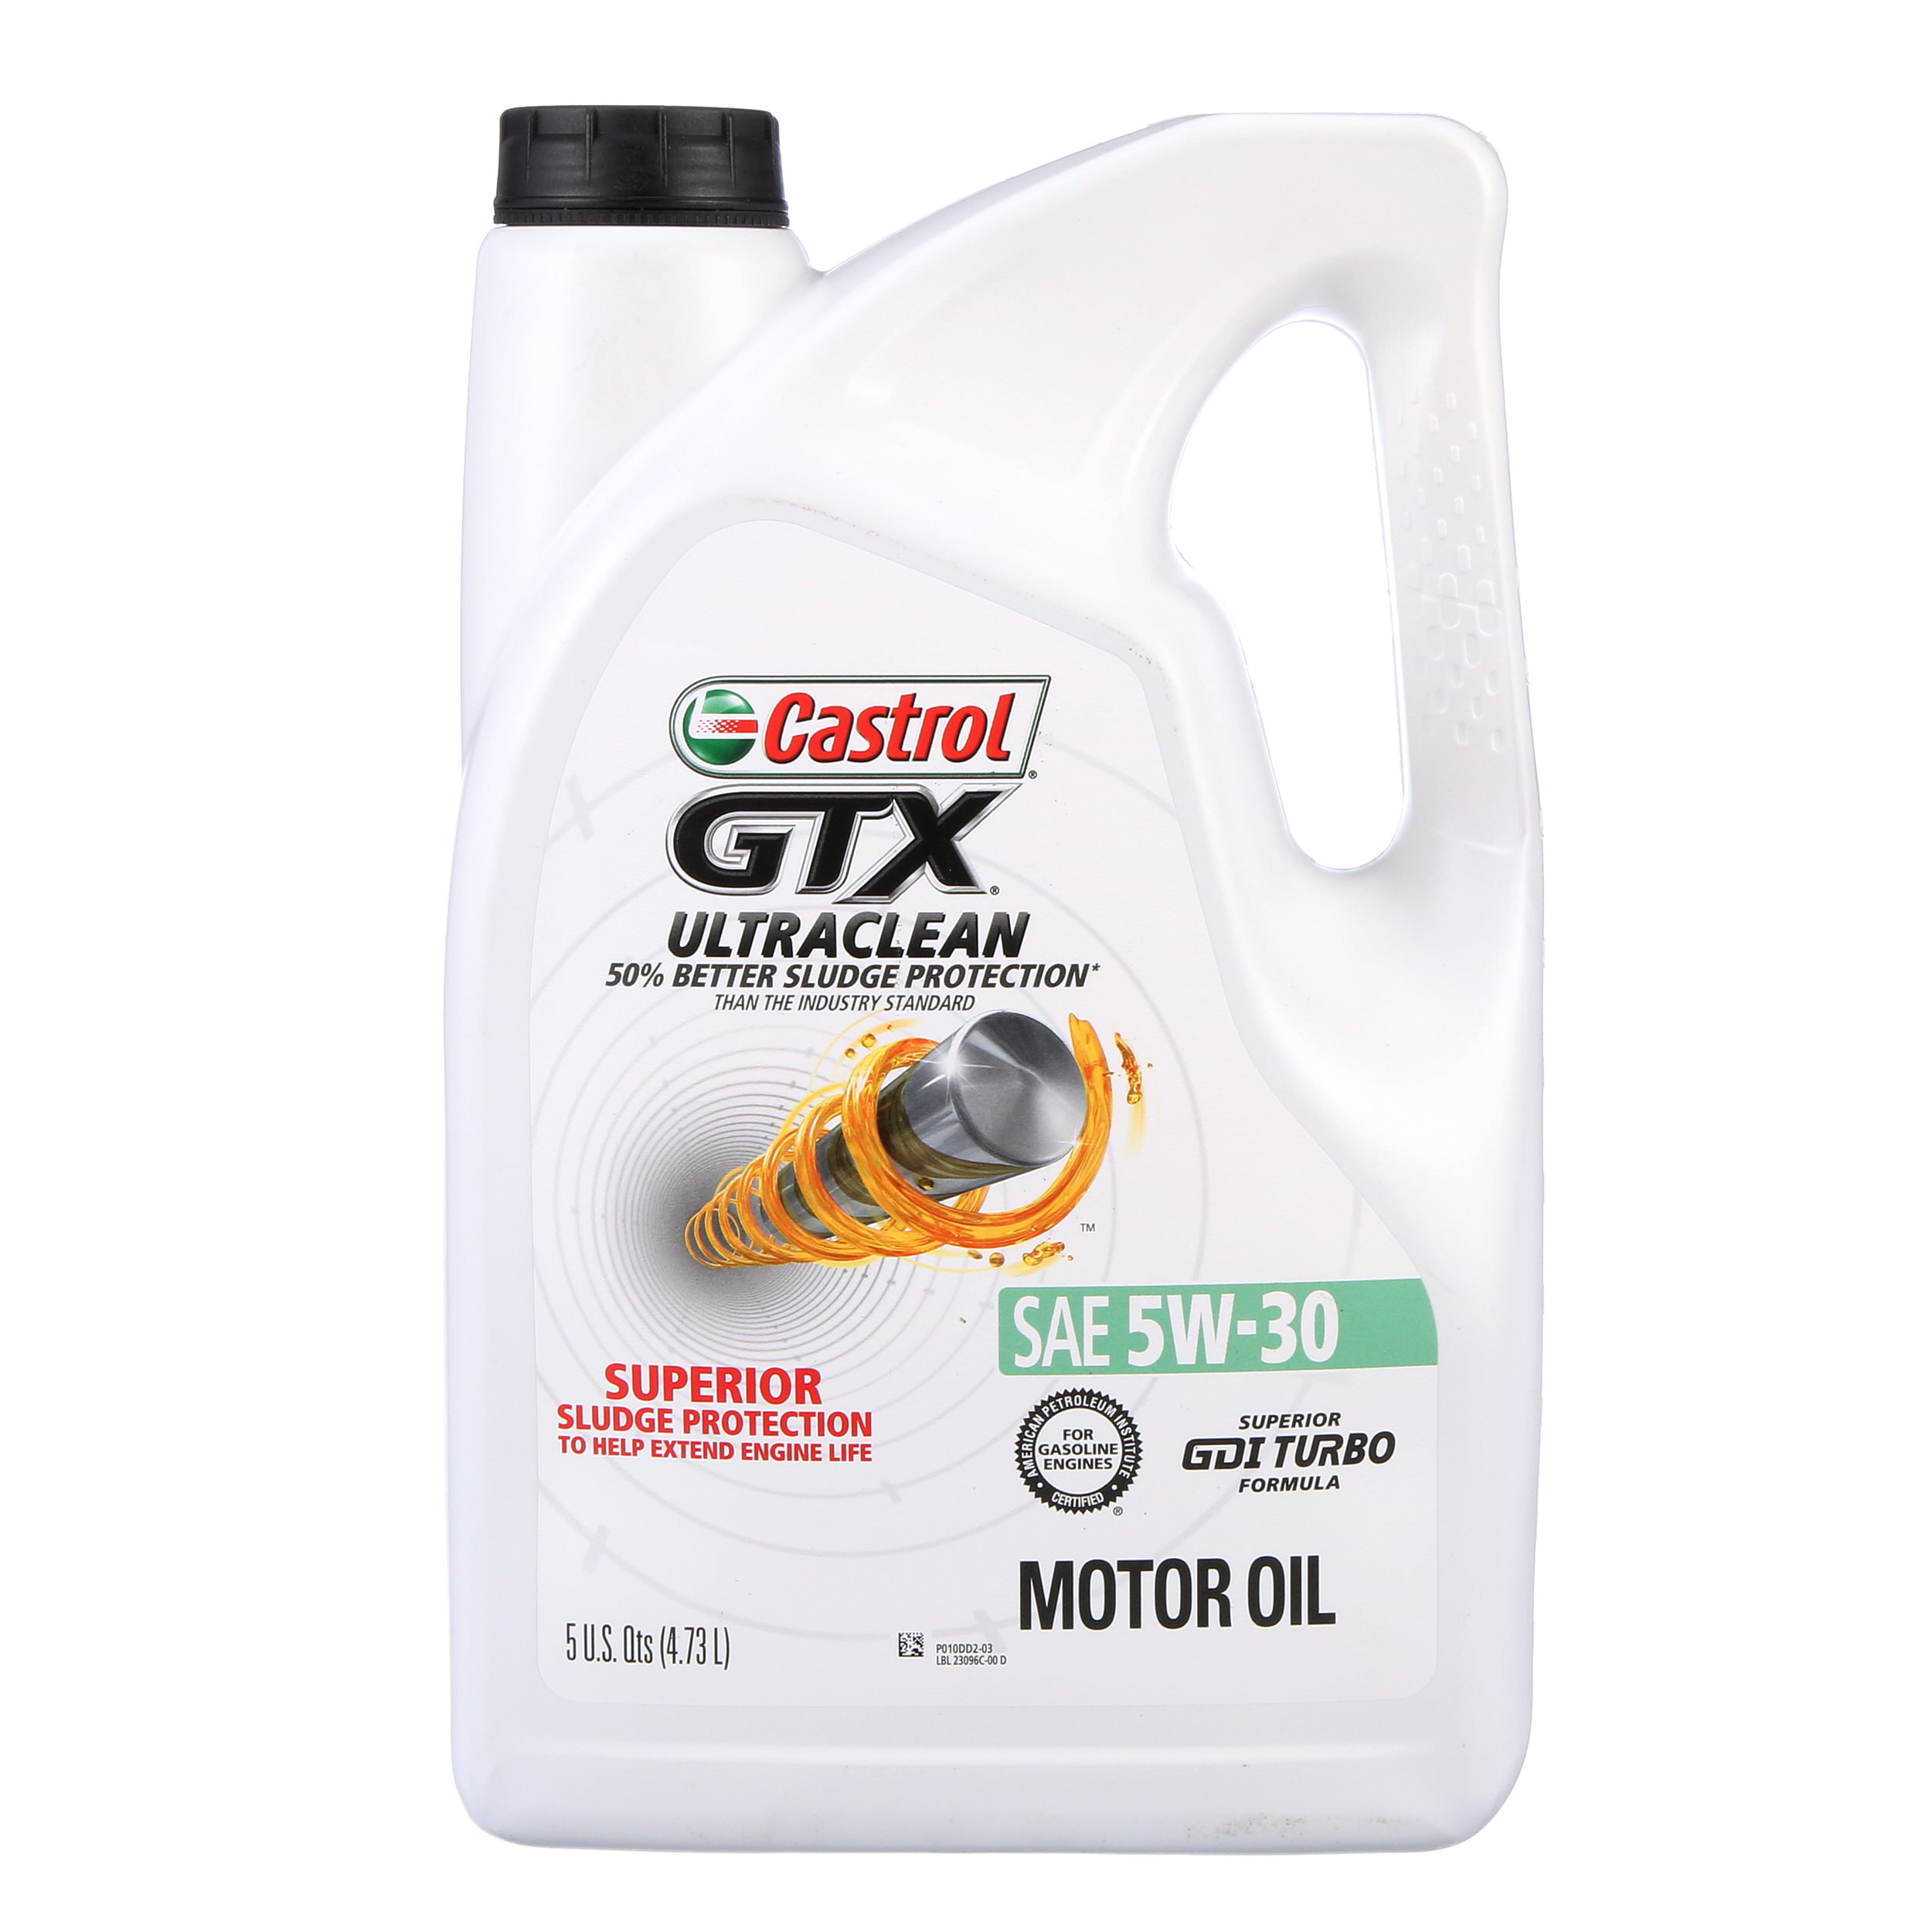 Кастрол GTX 5w30. Castrol Ultra clean. Моторное масло Castrol GTX High Mileage 5w-30 4.83 л.